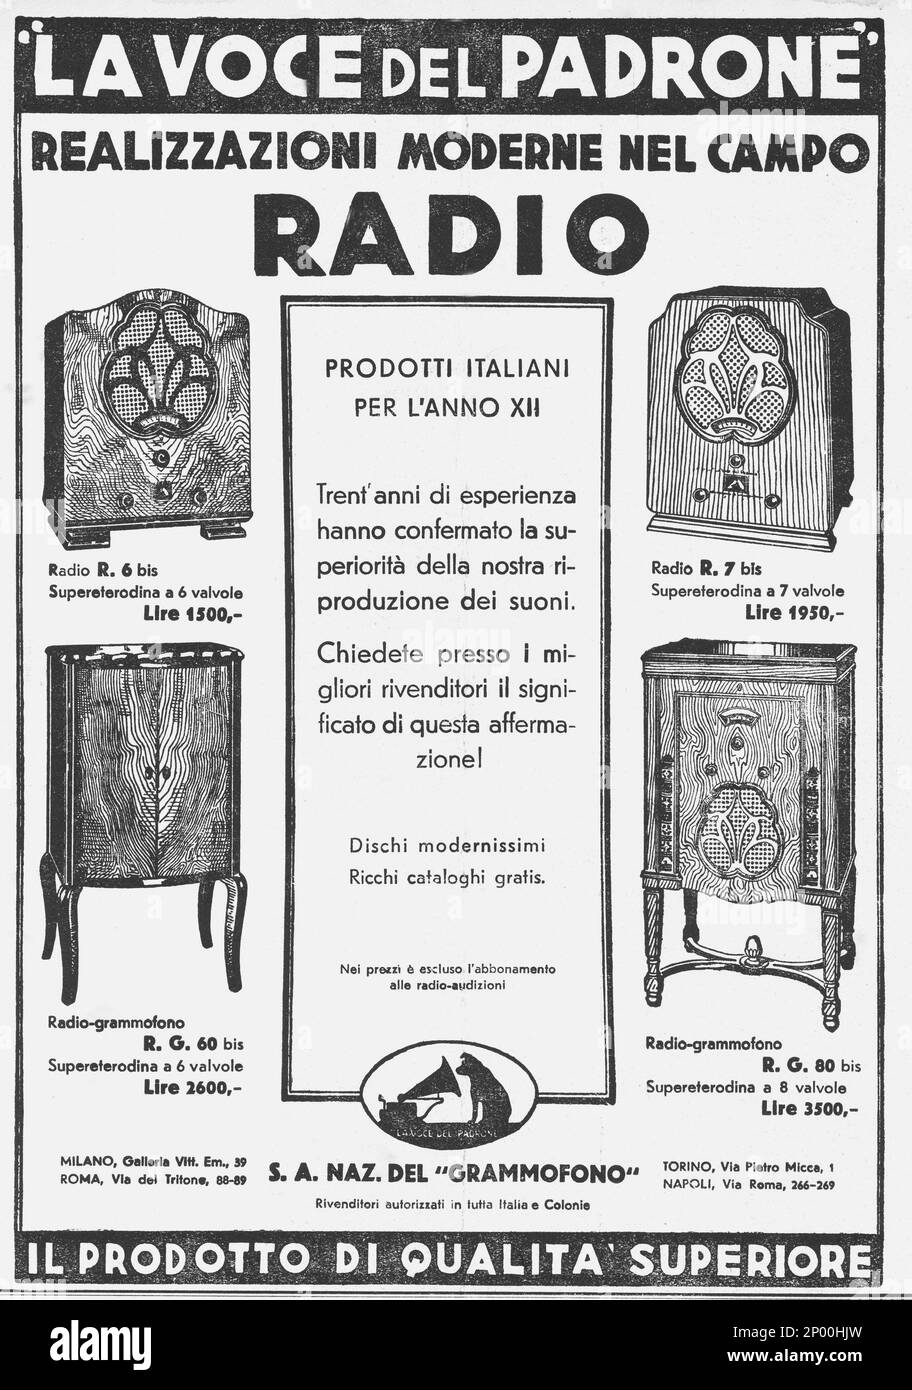 1934 : Advertising for the italian RADIO  LA VOCE DEL PADRONE ( The Master and his Voice ) - EIAR - E.I.A.R. - ANNI TRENTA - '30 - 30's  - fascismo - fascism - fascist - fascista - pubblicità ----  Archivio GBB Stock Photo